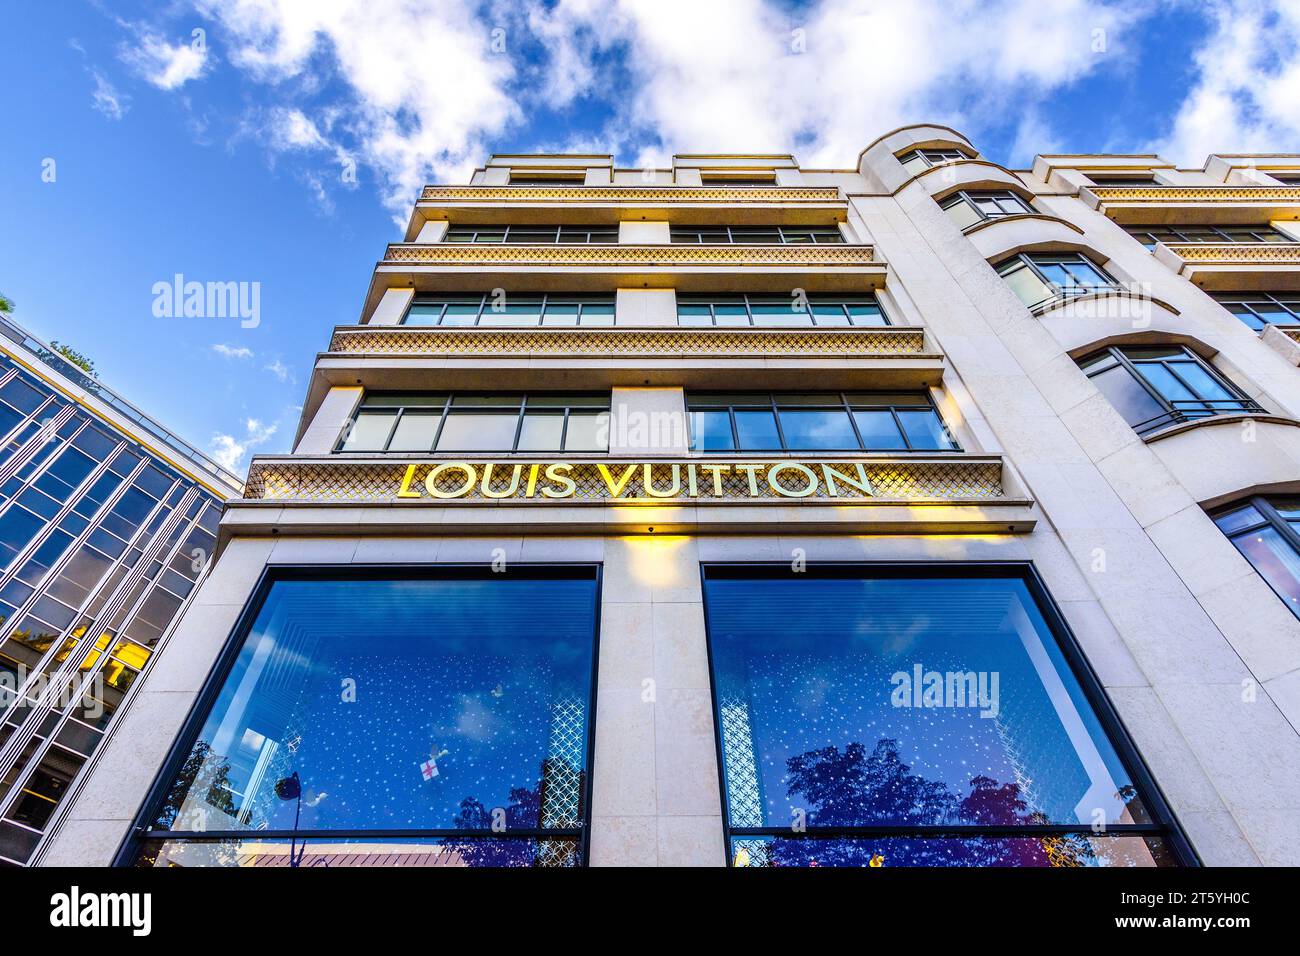 Exterior of the Louis Vuitton luxury store at 101 Avenue des Champs-Elysées, 75008 Paris, France. Stock Photo